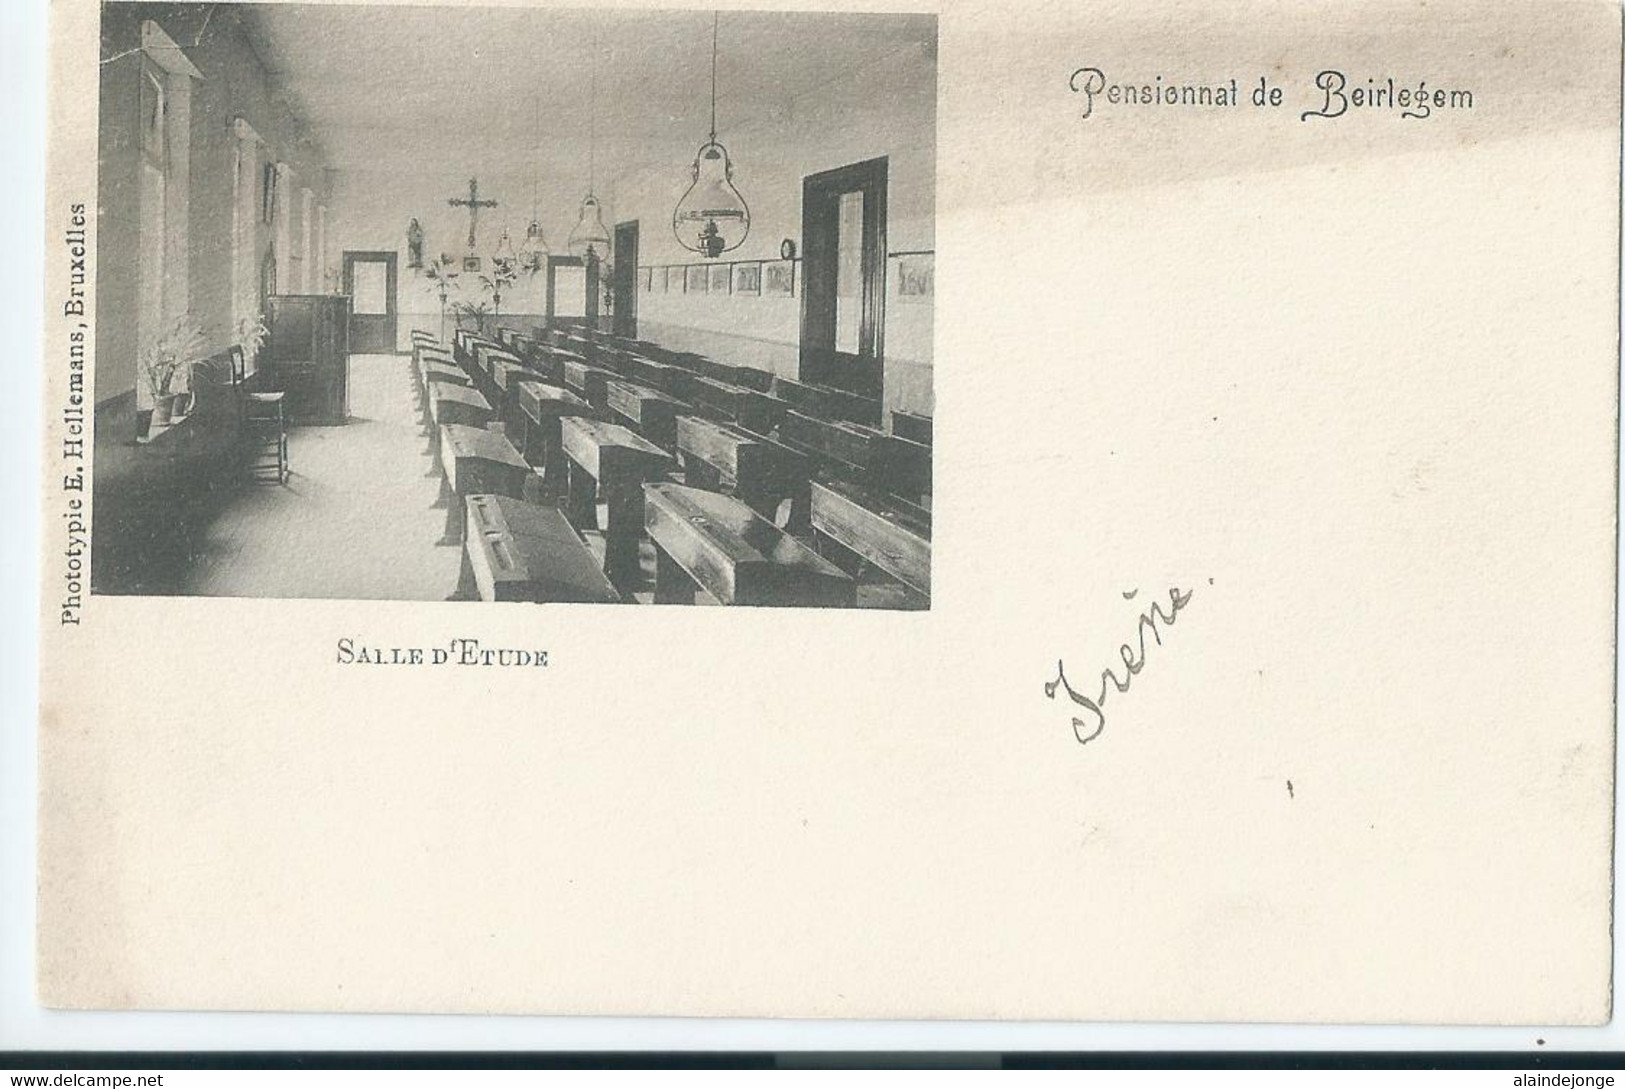 Beirlegem - Pensionnat De Beirlegem - Salle D'Etude - 1905 - Zwalm